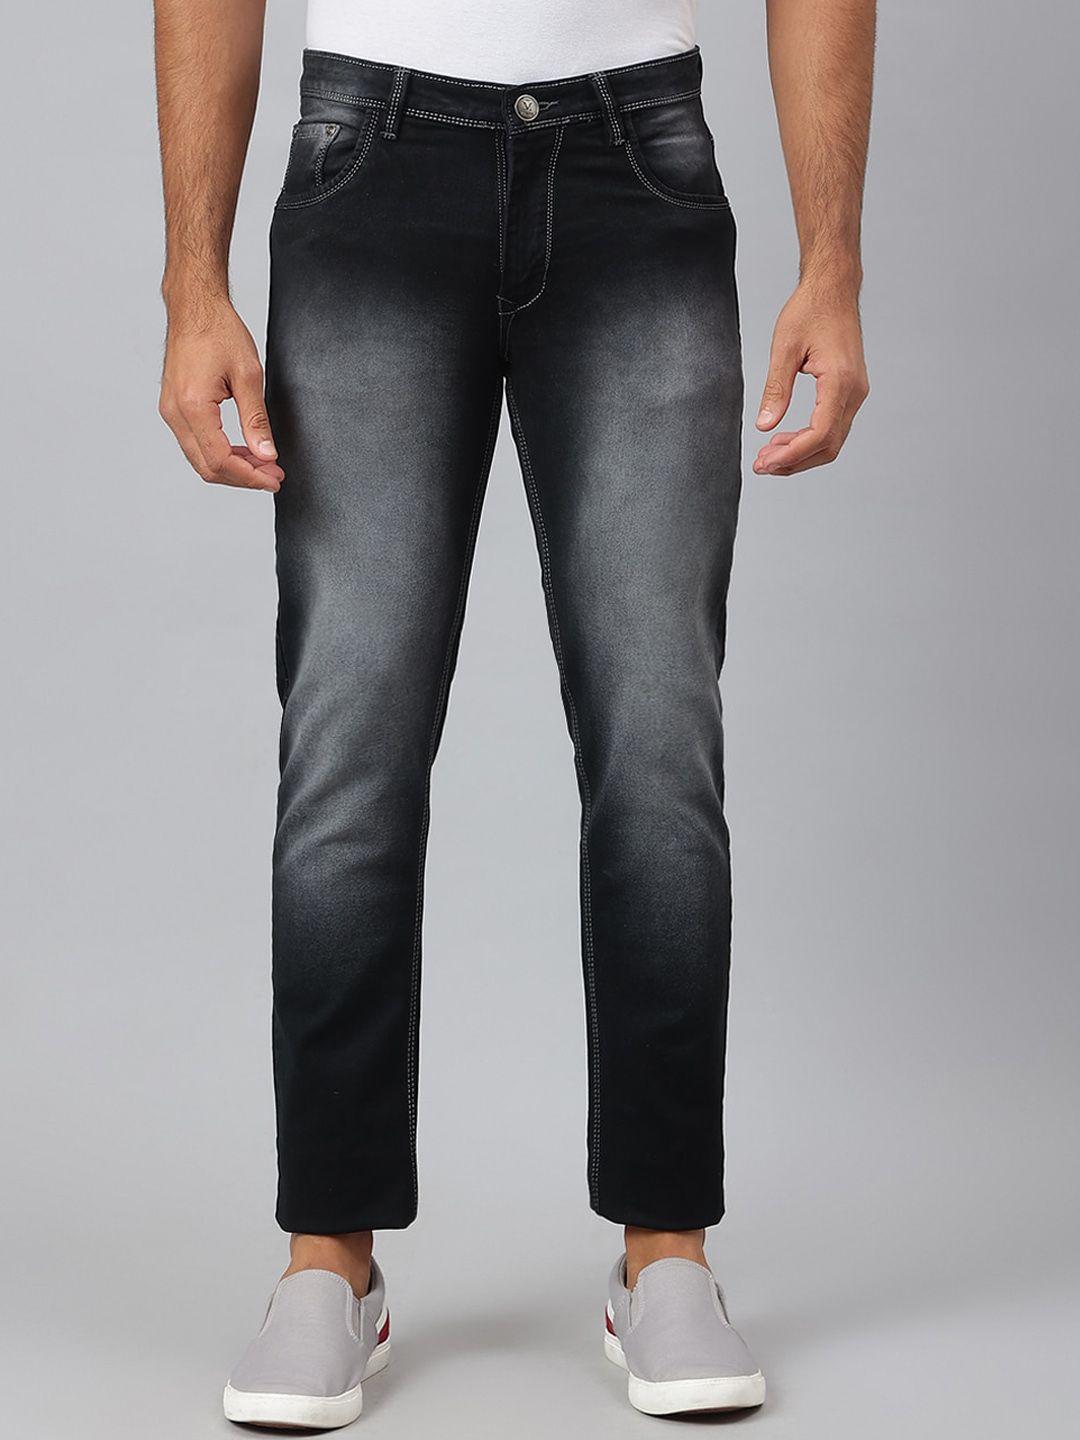 mr-button-men-black-slim-fit-heavy-fade-cotton-jeans